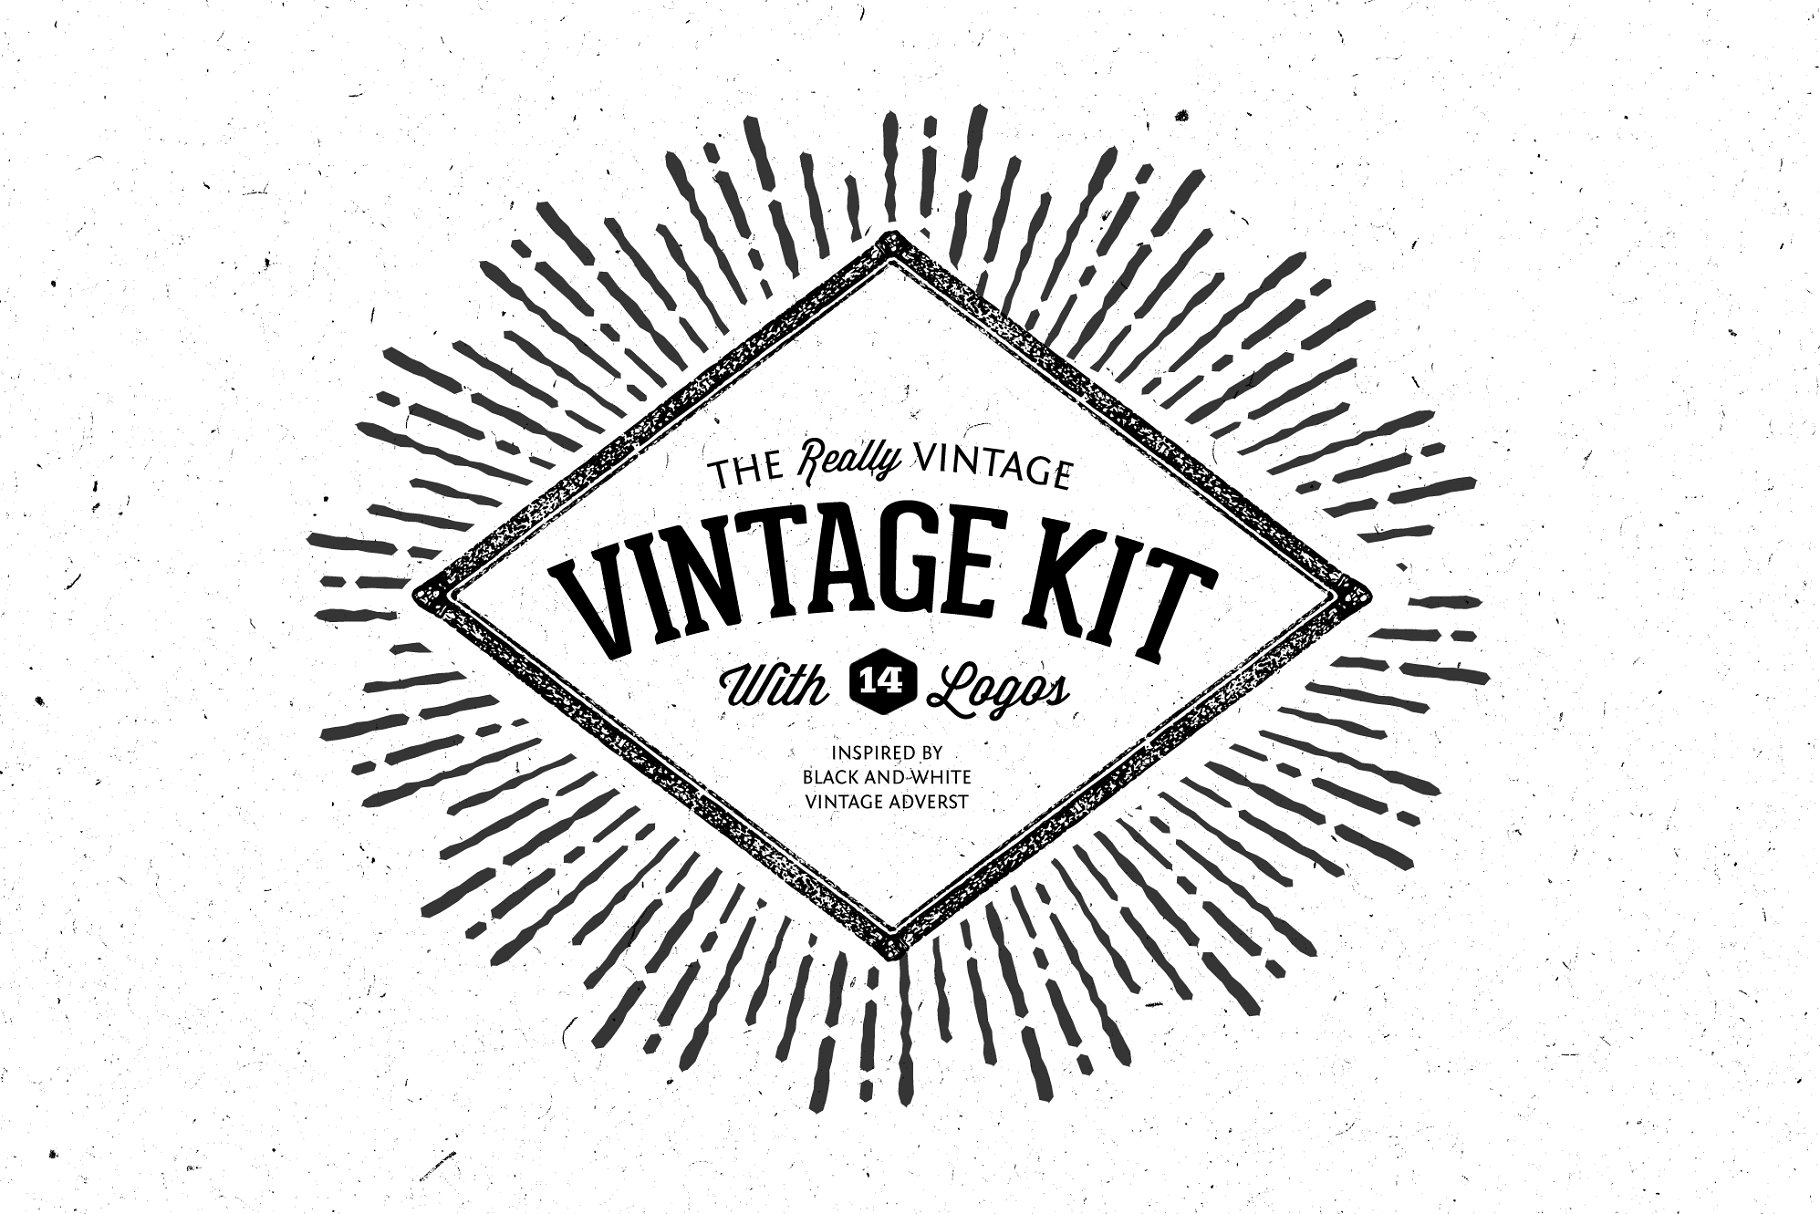 复古矢量图案集合+14枚标志 Very Vintage Vector Kit + 14 Logos插图